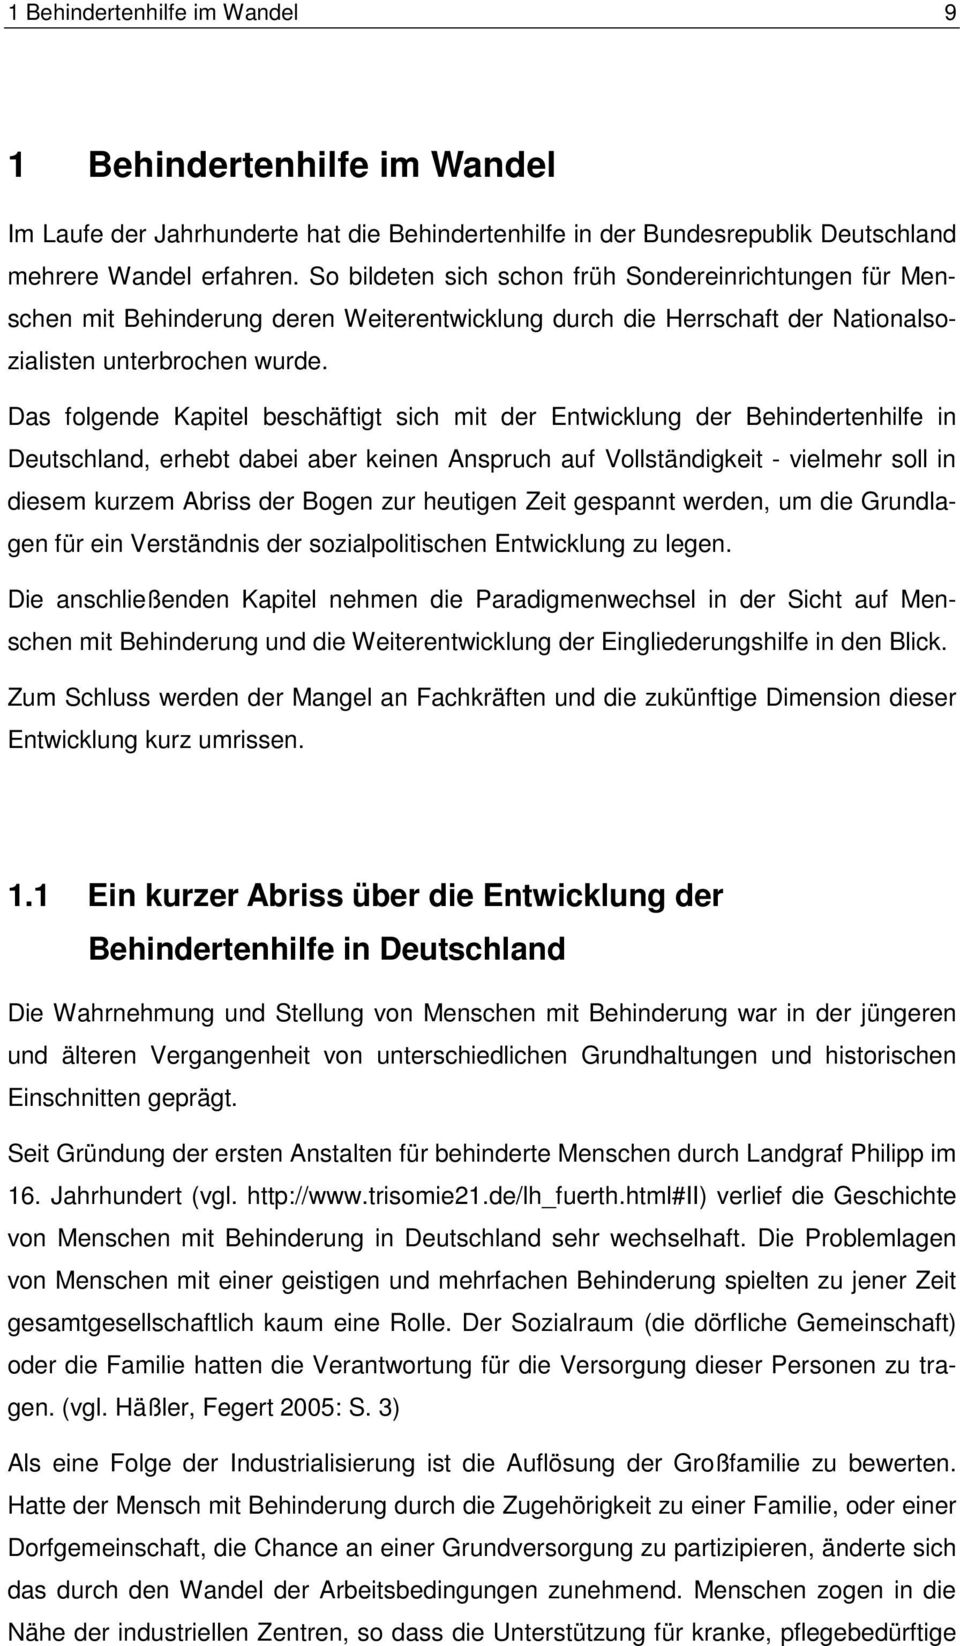 Das folgende Kapitel beschäftigt sich mit der Entwicklung der Behindertenhilfe in Deutschland, erhebt dabei aber keinen Anspruch auf Vollständigkeit - vielmehr soll in diesem kurzem Abriss der Bogen